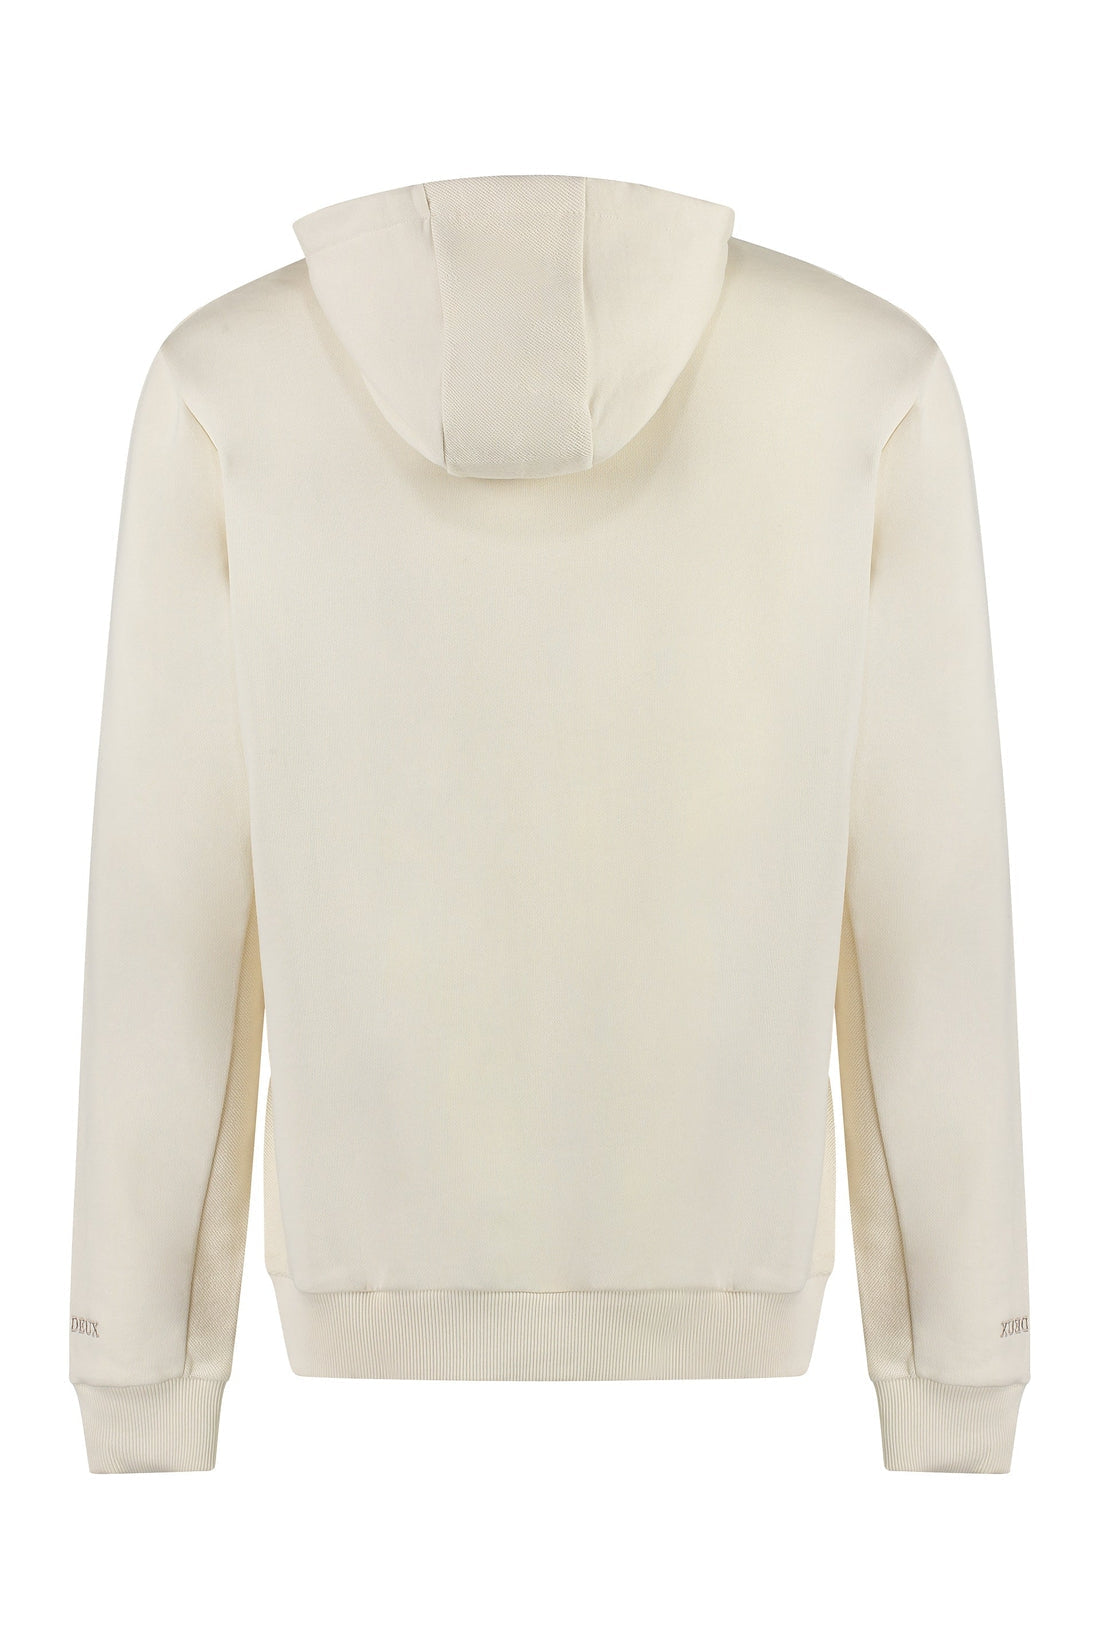 Les Deux-OUTLET-SALE-Reverse cotton hoodie-ARCHIVIST